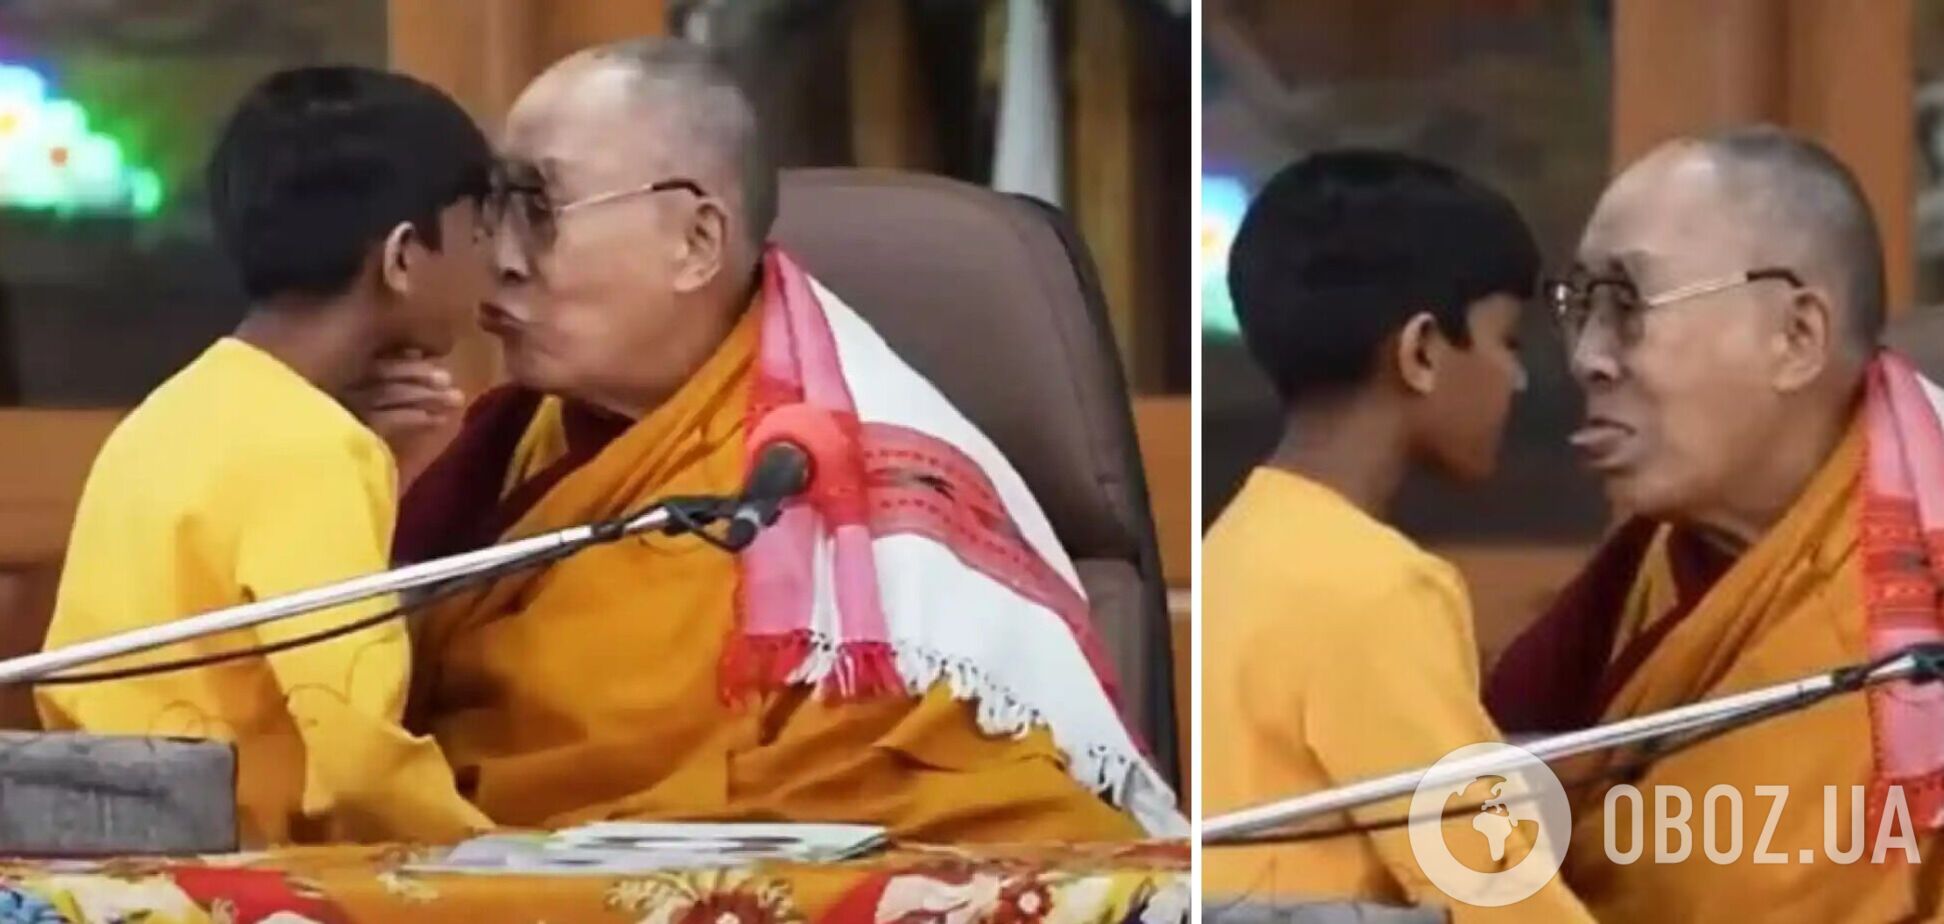 Далай-лама попал в громкий скандал из-за поцелуя с мальчиком: история получила продолжение. Видео